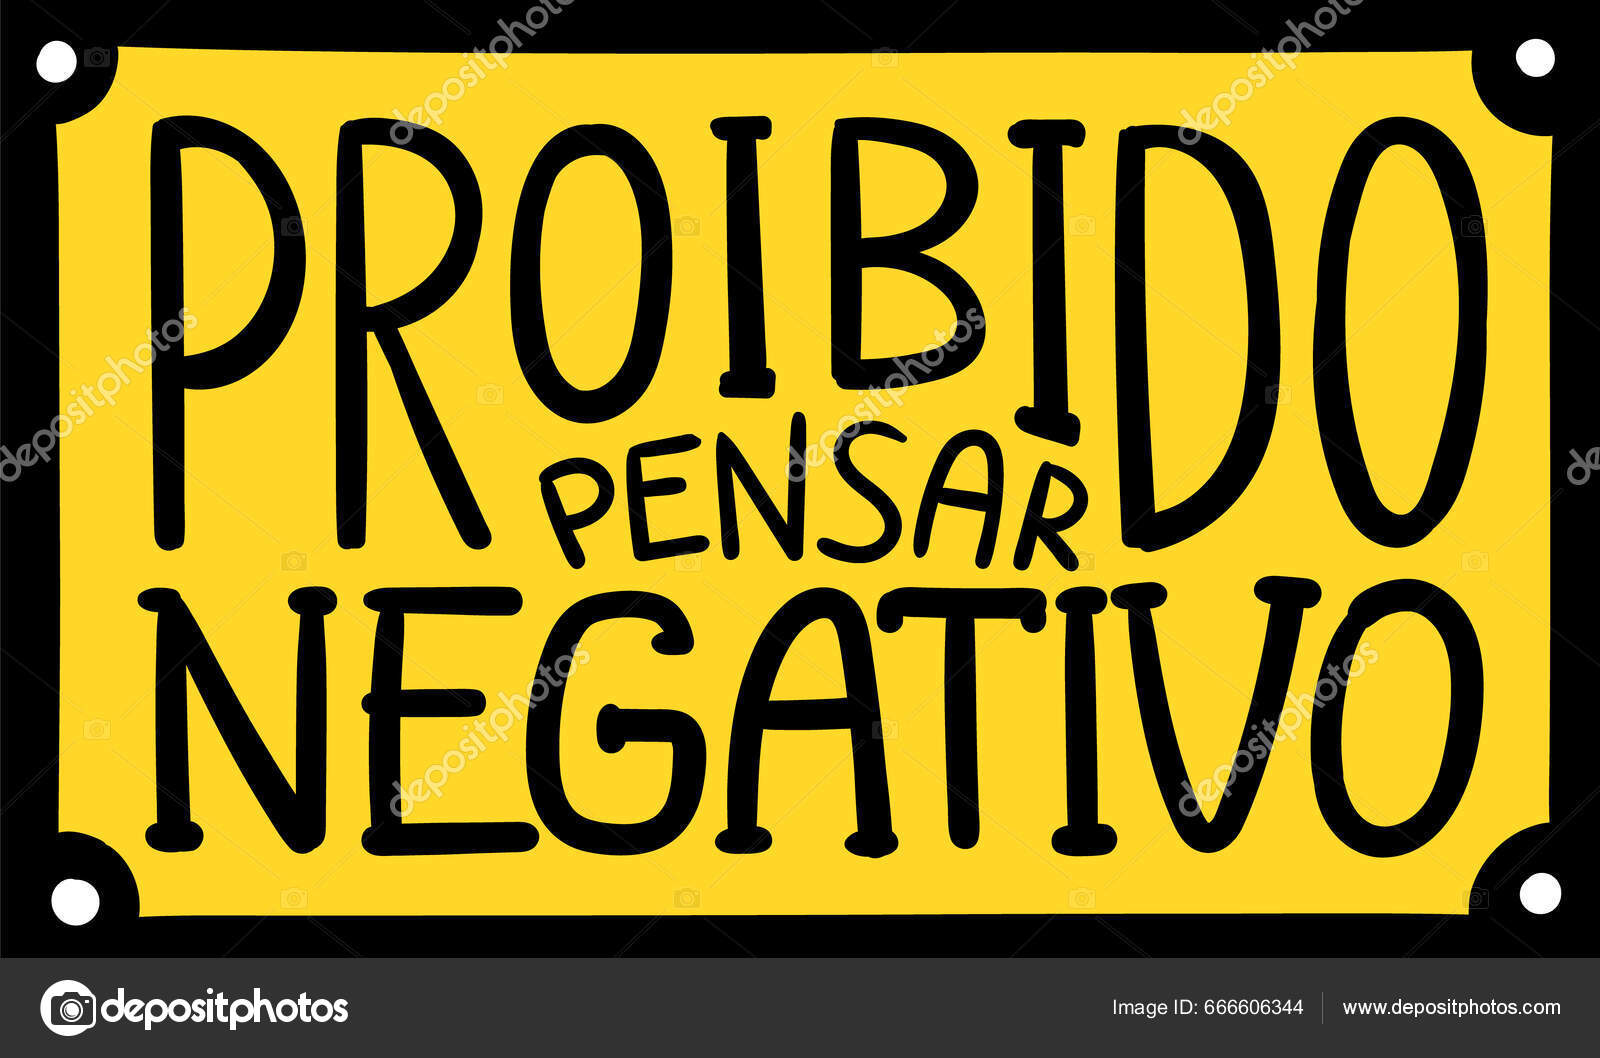 Cartaz colorido distorcido em português brasileiro tradução nunca